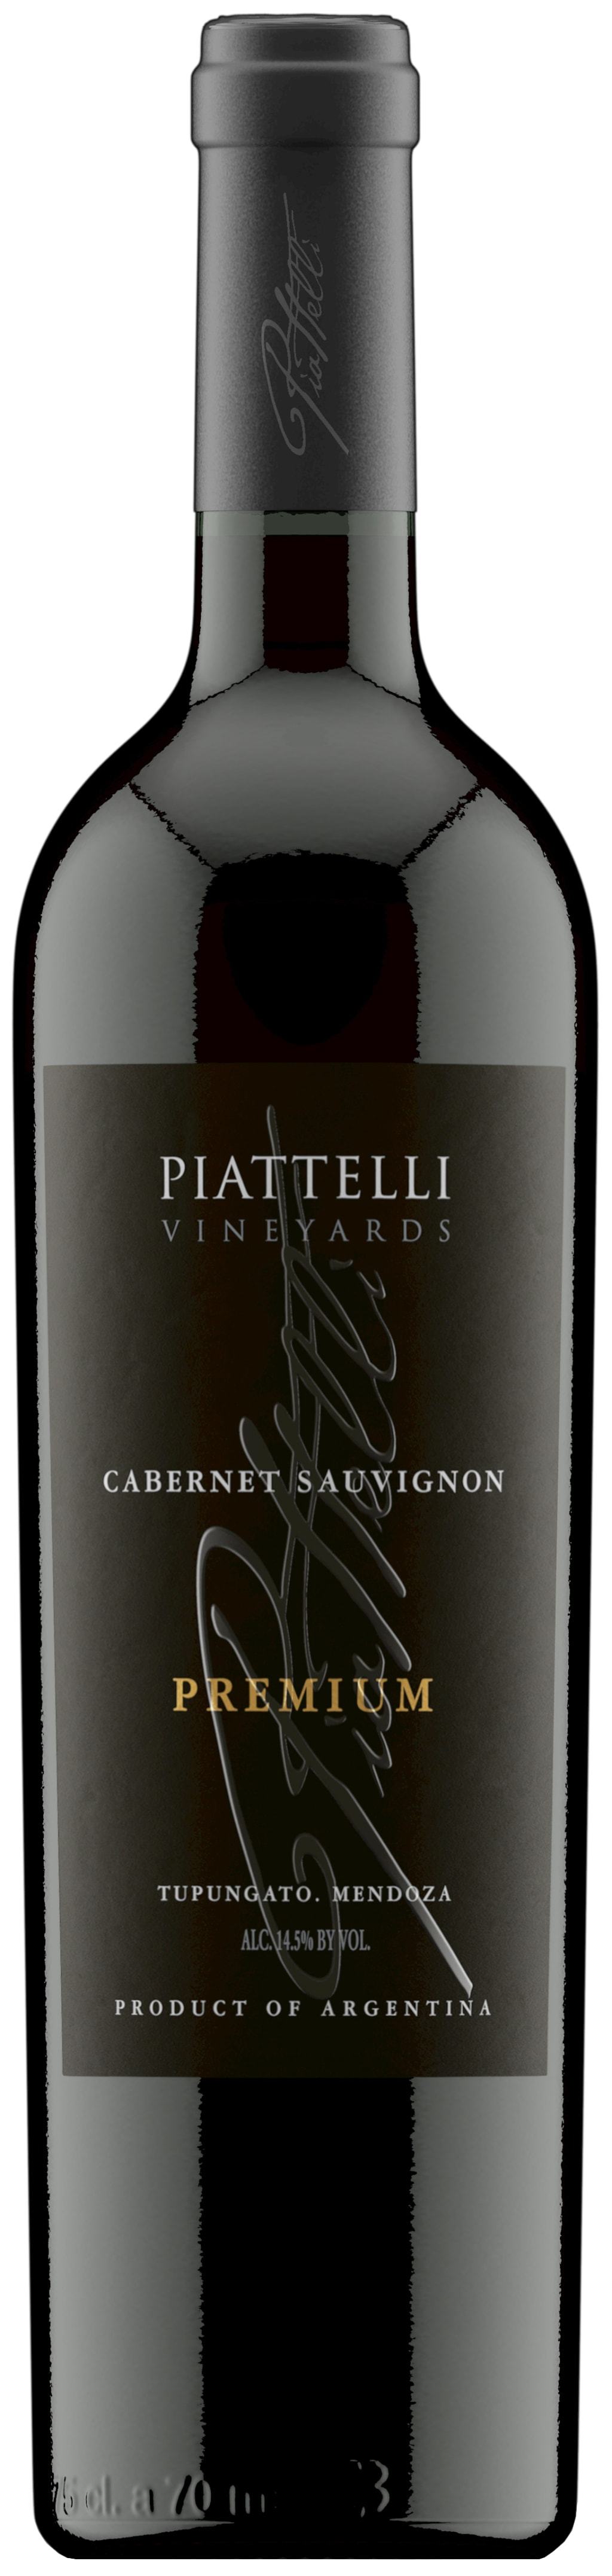 Piattelli Vineyards Cabernet Sauvignon Premium 2017